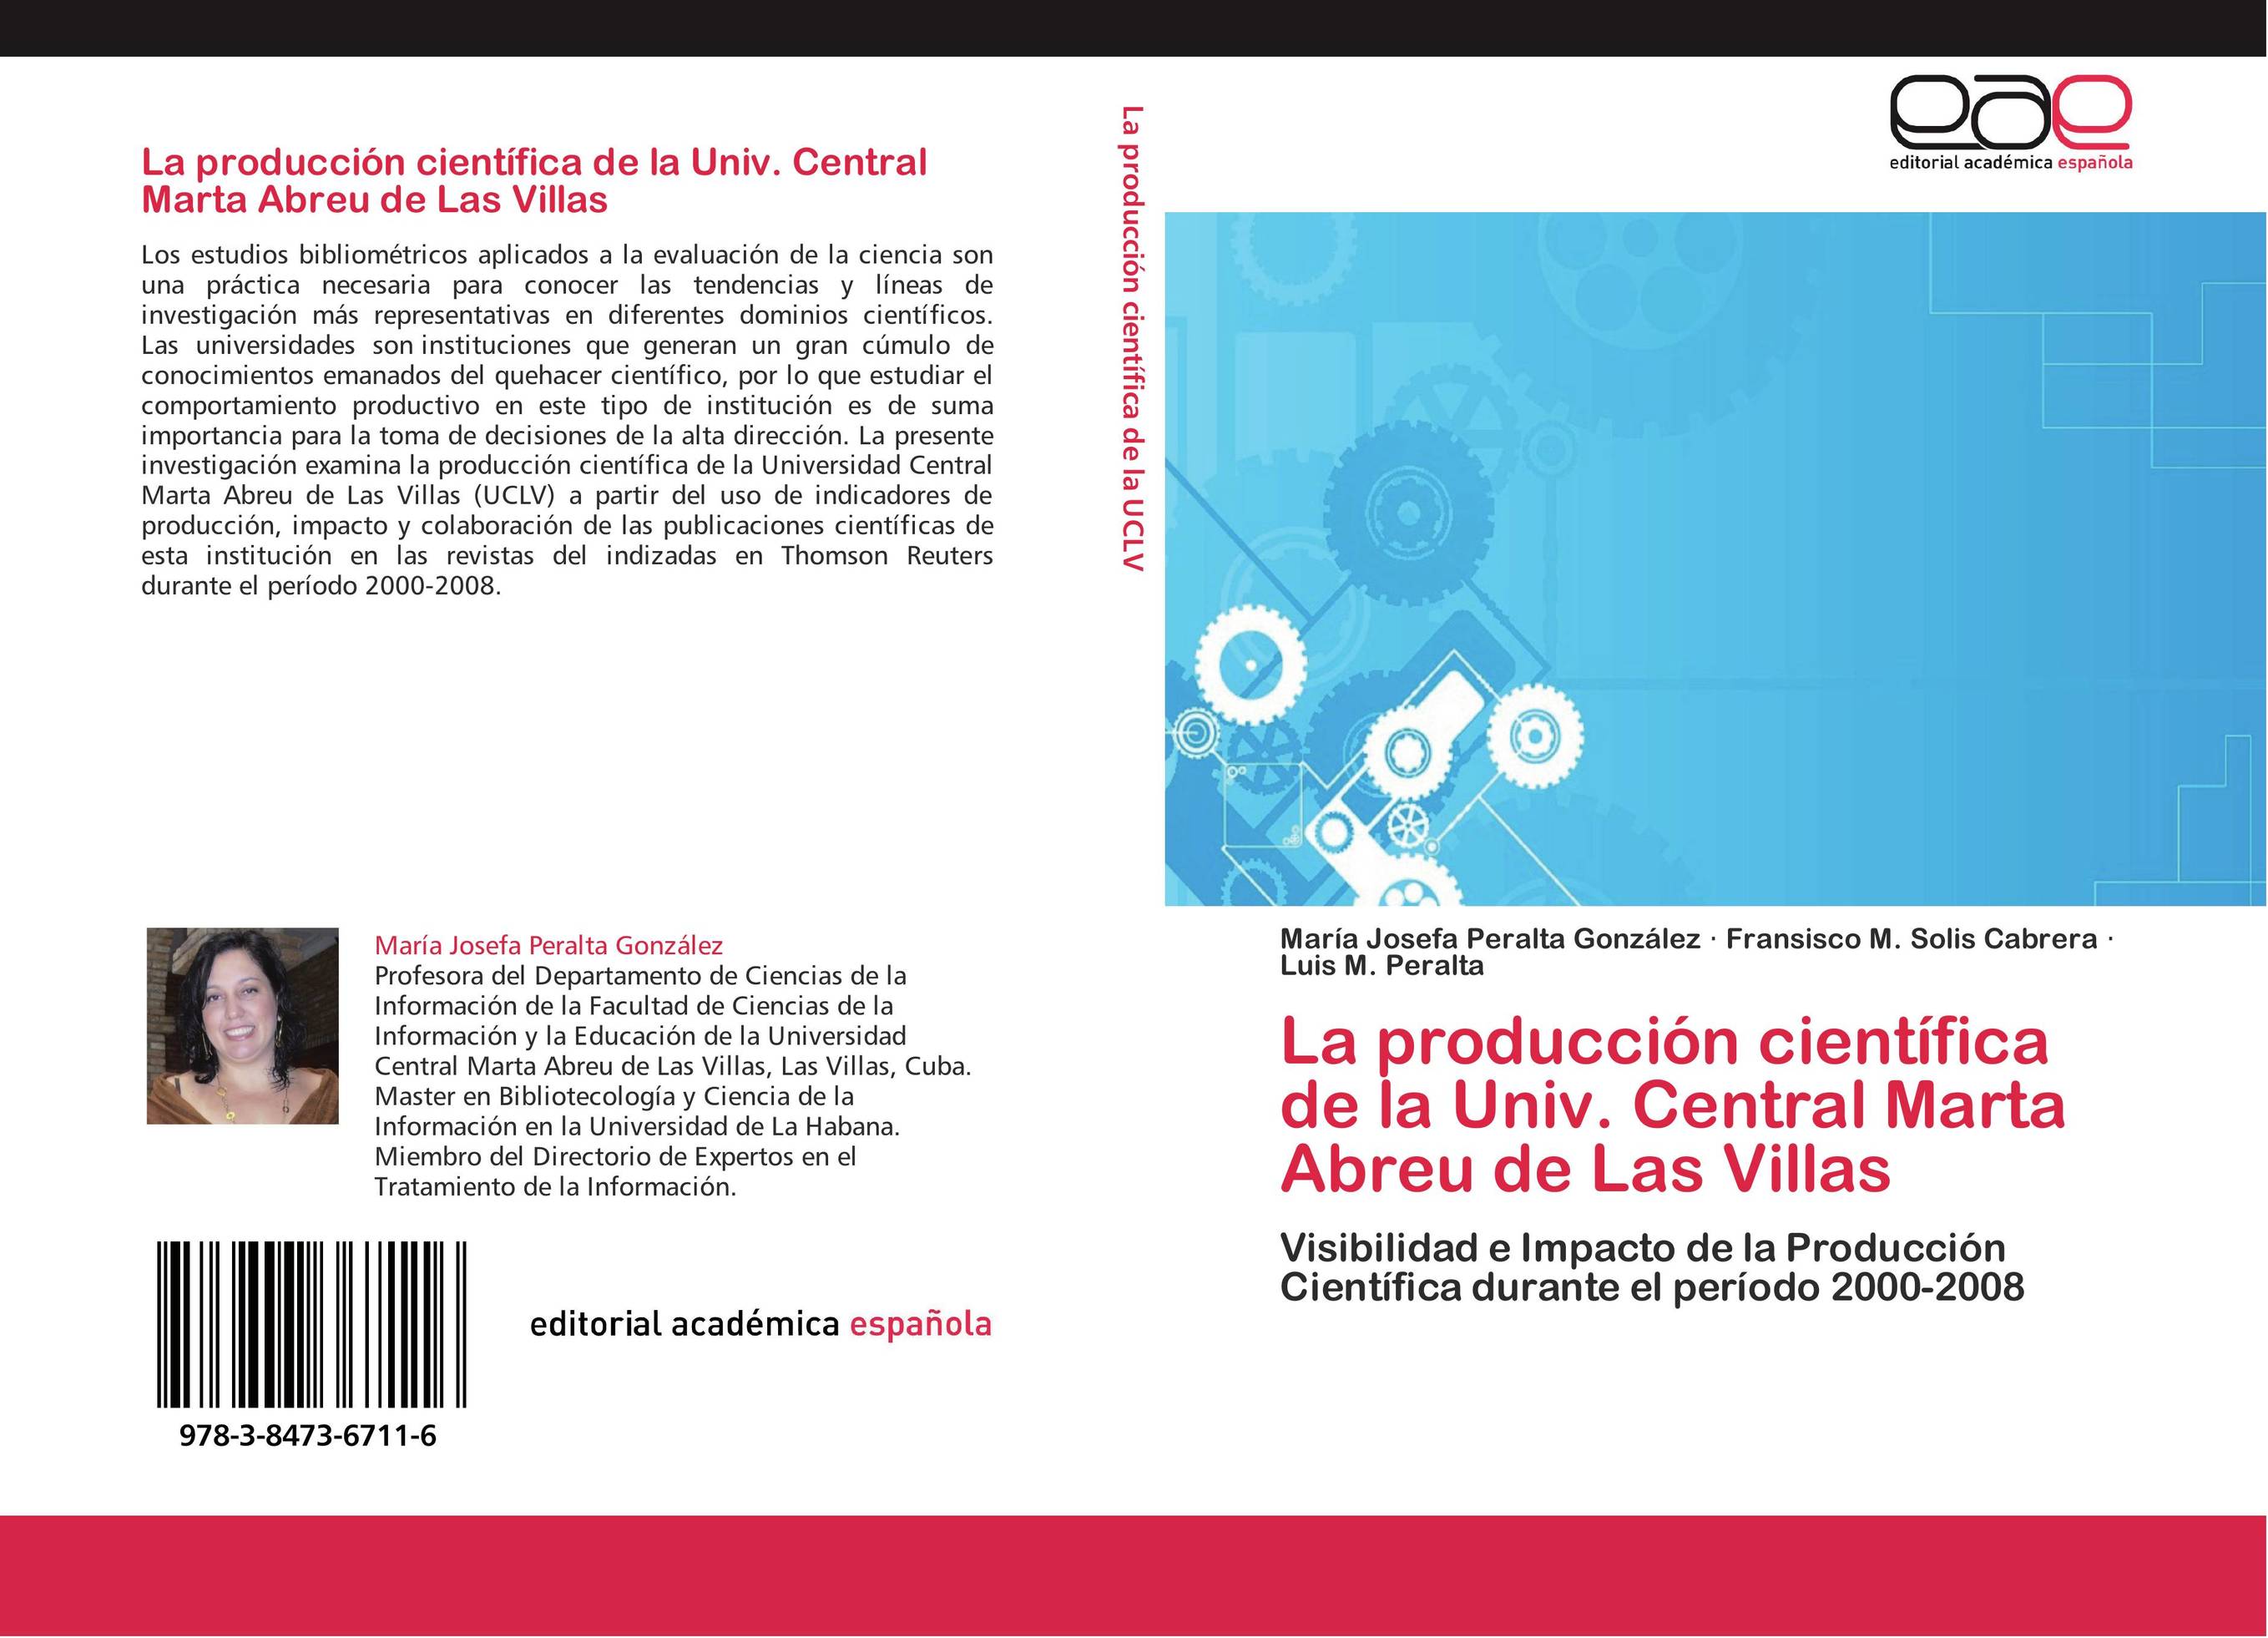 La producción científica de la Univ. Central Marta Abreu de Las Villas